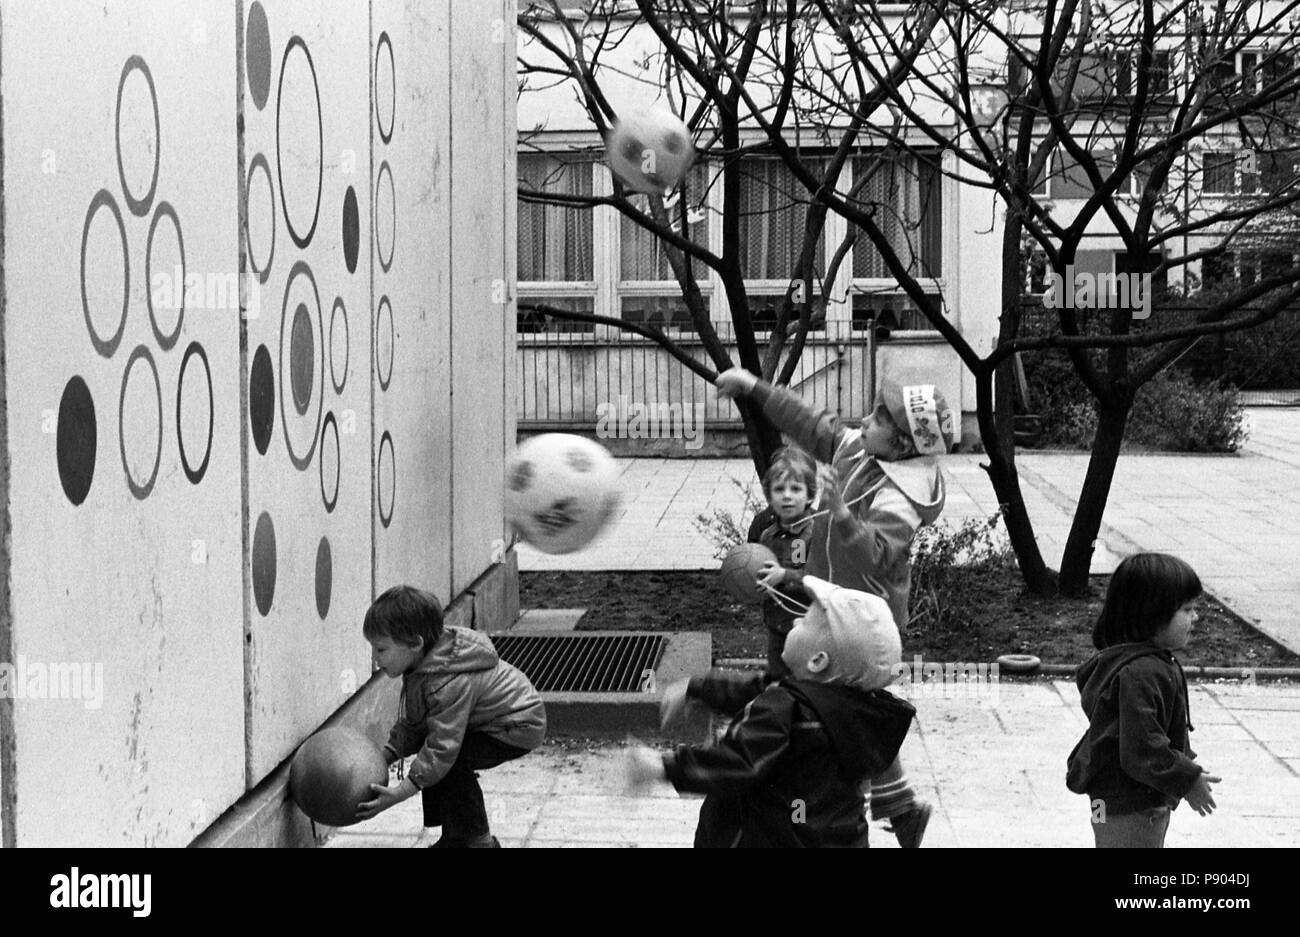 Berlín, República Democrática Alemana, los niños arrojando Baelle en una guardería de niños contra una pared de objetivo Foto de stock